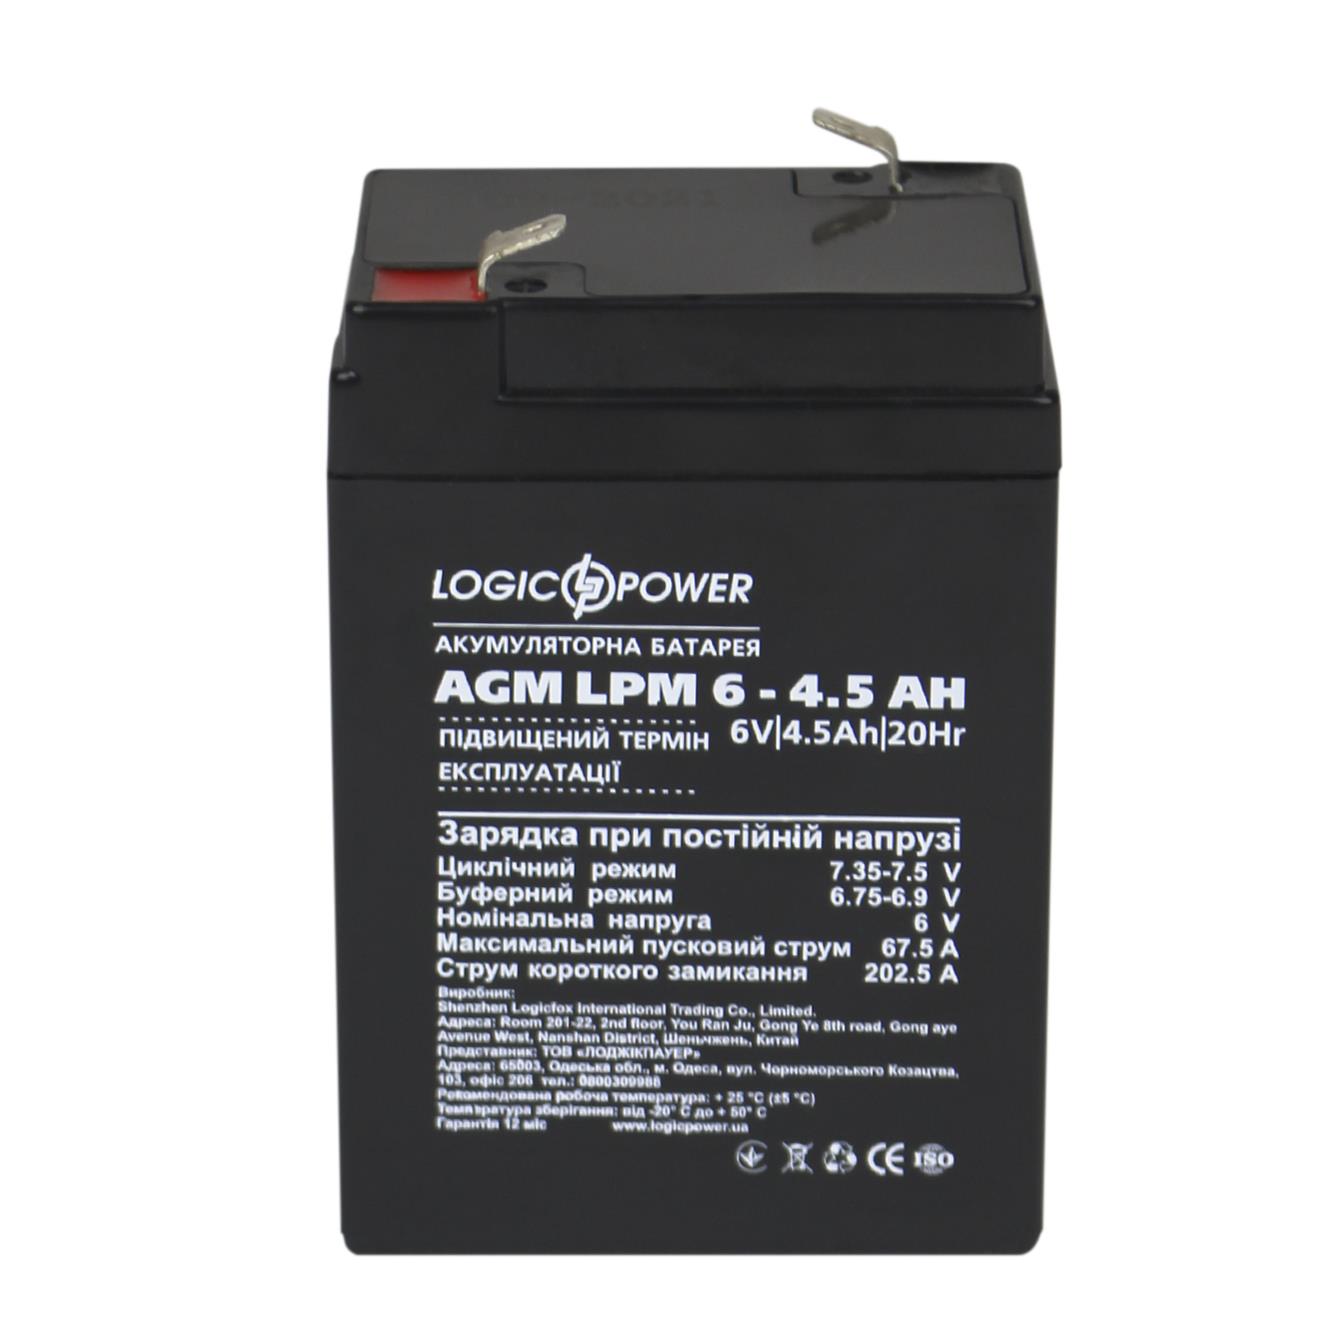 продаём LogicPower AGM LPM 6V - 4.5 Ah (3860) в Украине - фото 4